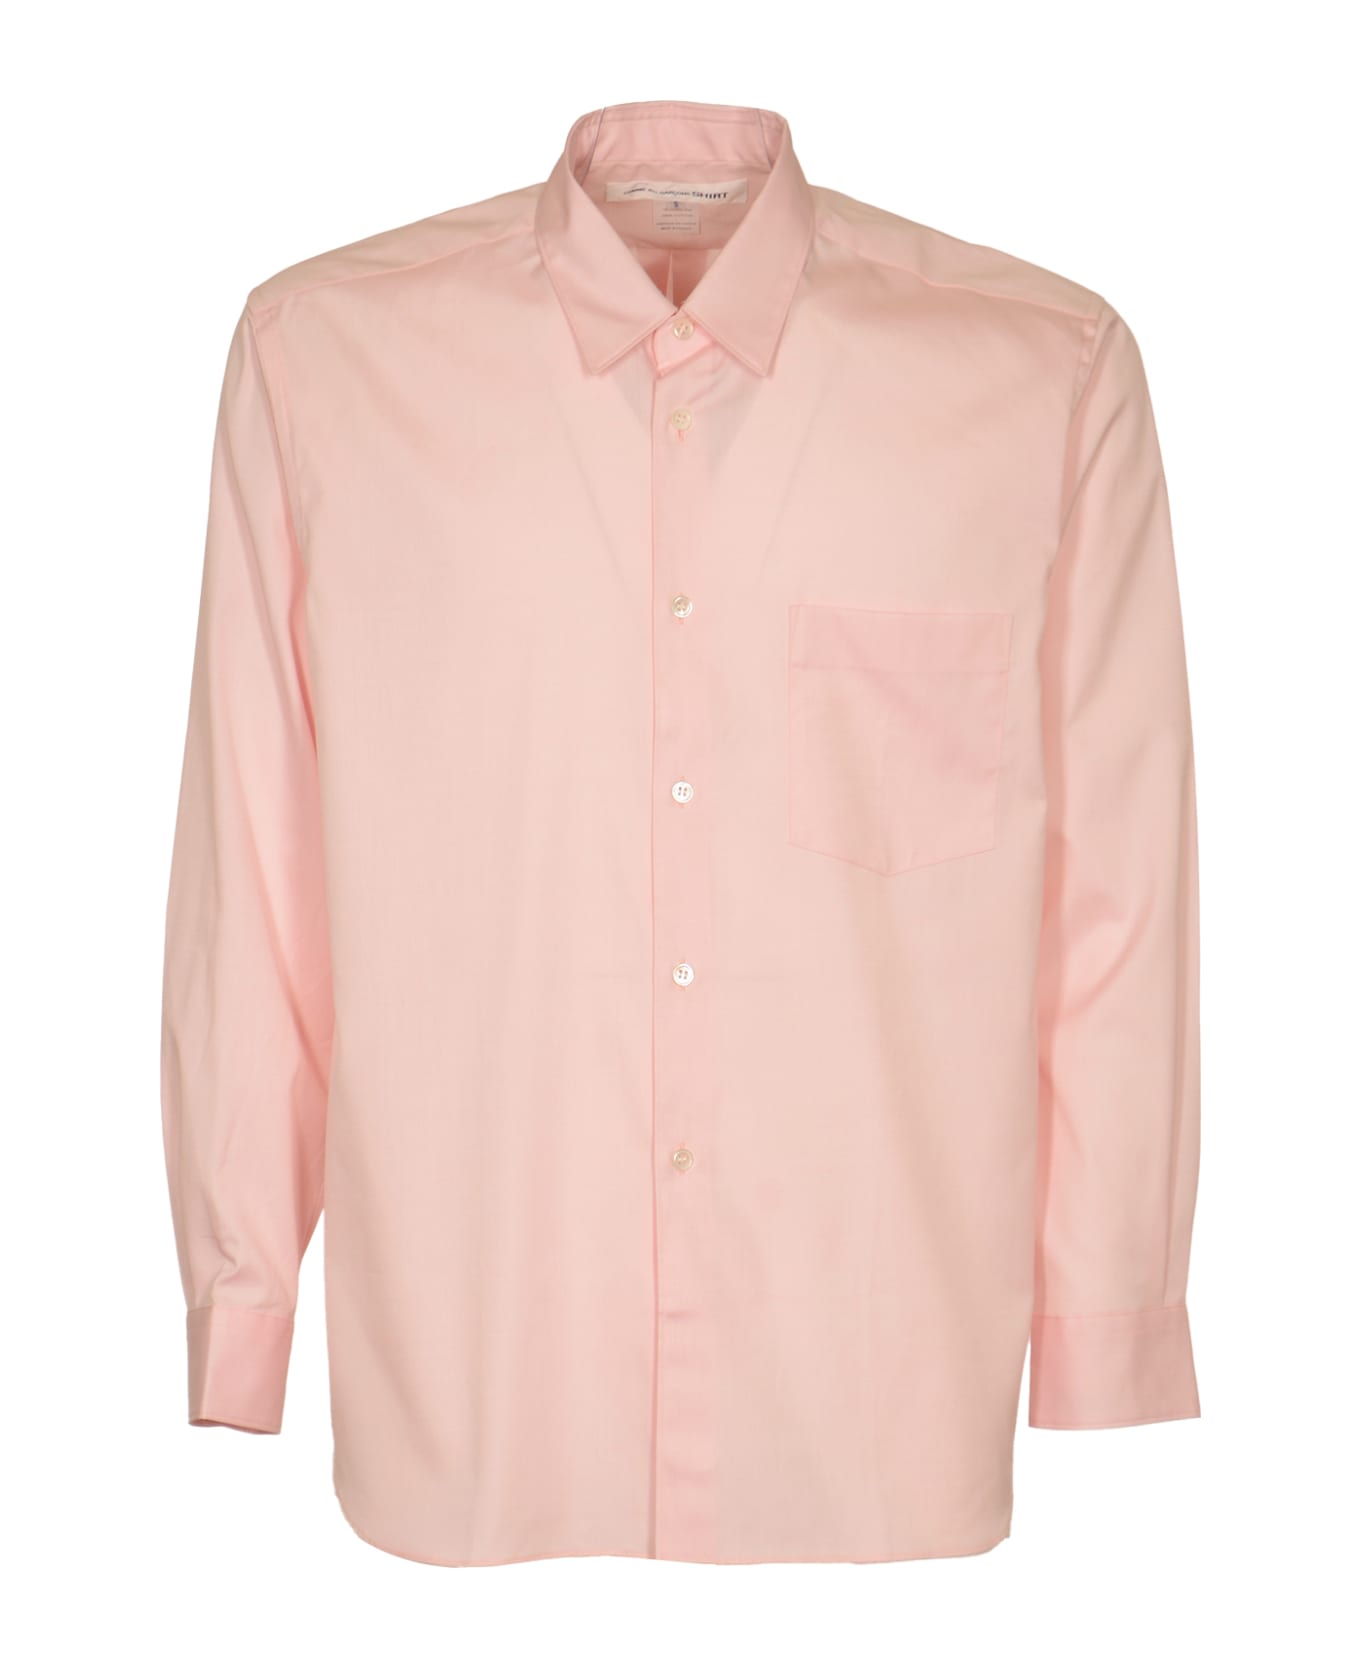 Comme des Garçons Patched Pocket Plain Formal Shirt - Pink シャツ